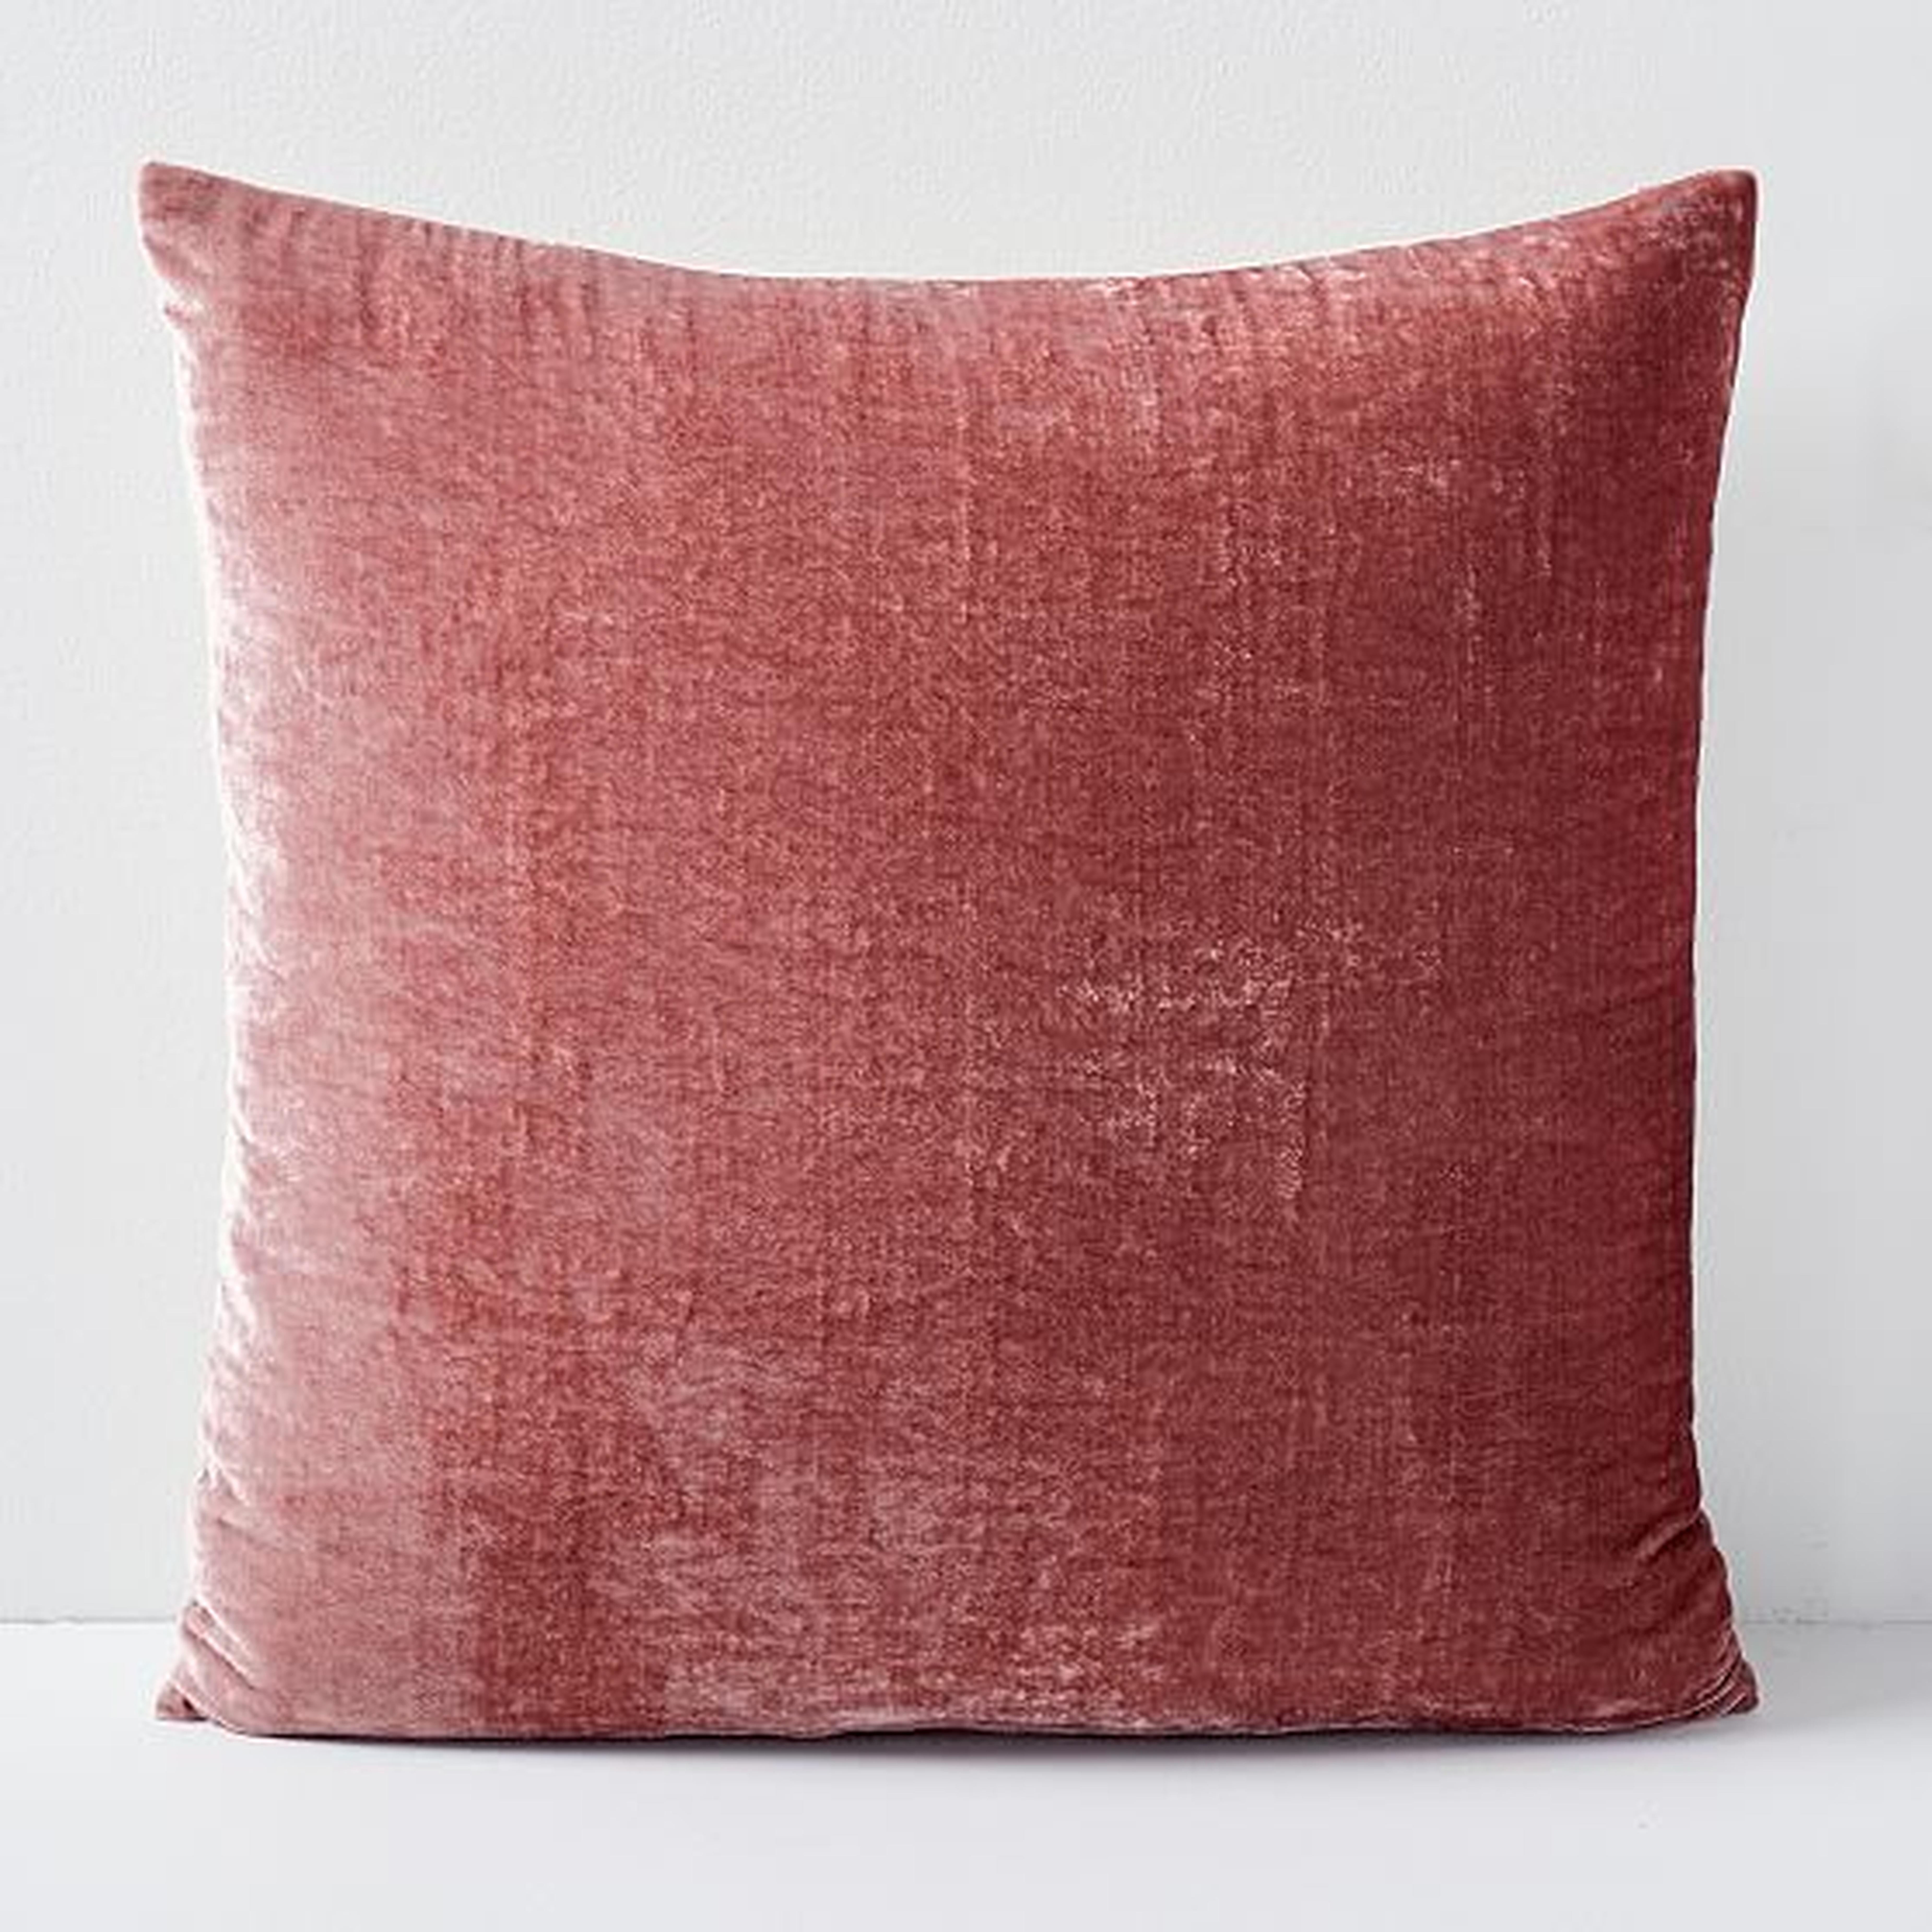 Lush Velvet Pillow Cover, Set of 2, Pink Grapefruit, 24"x24" - West Elm